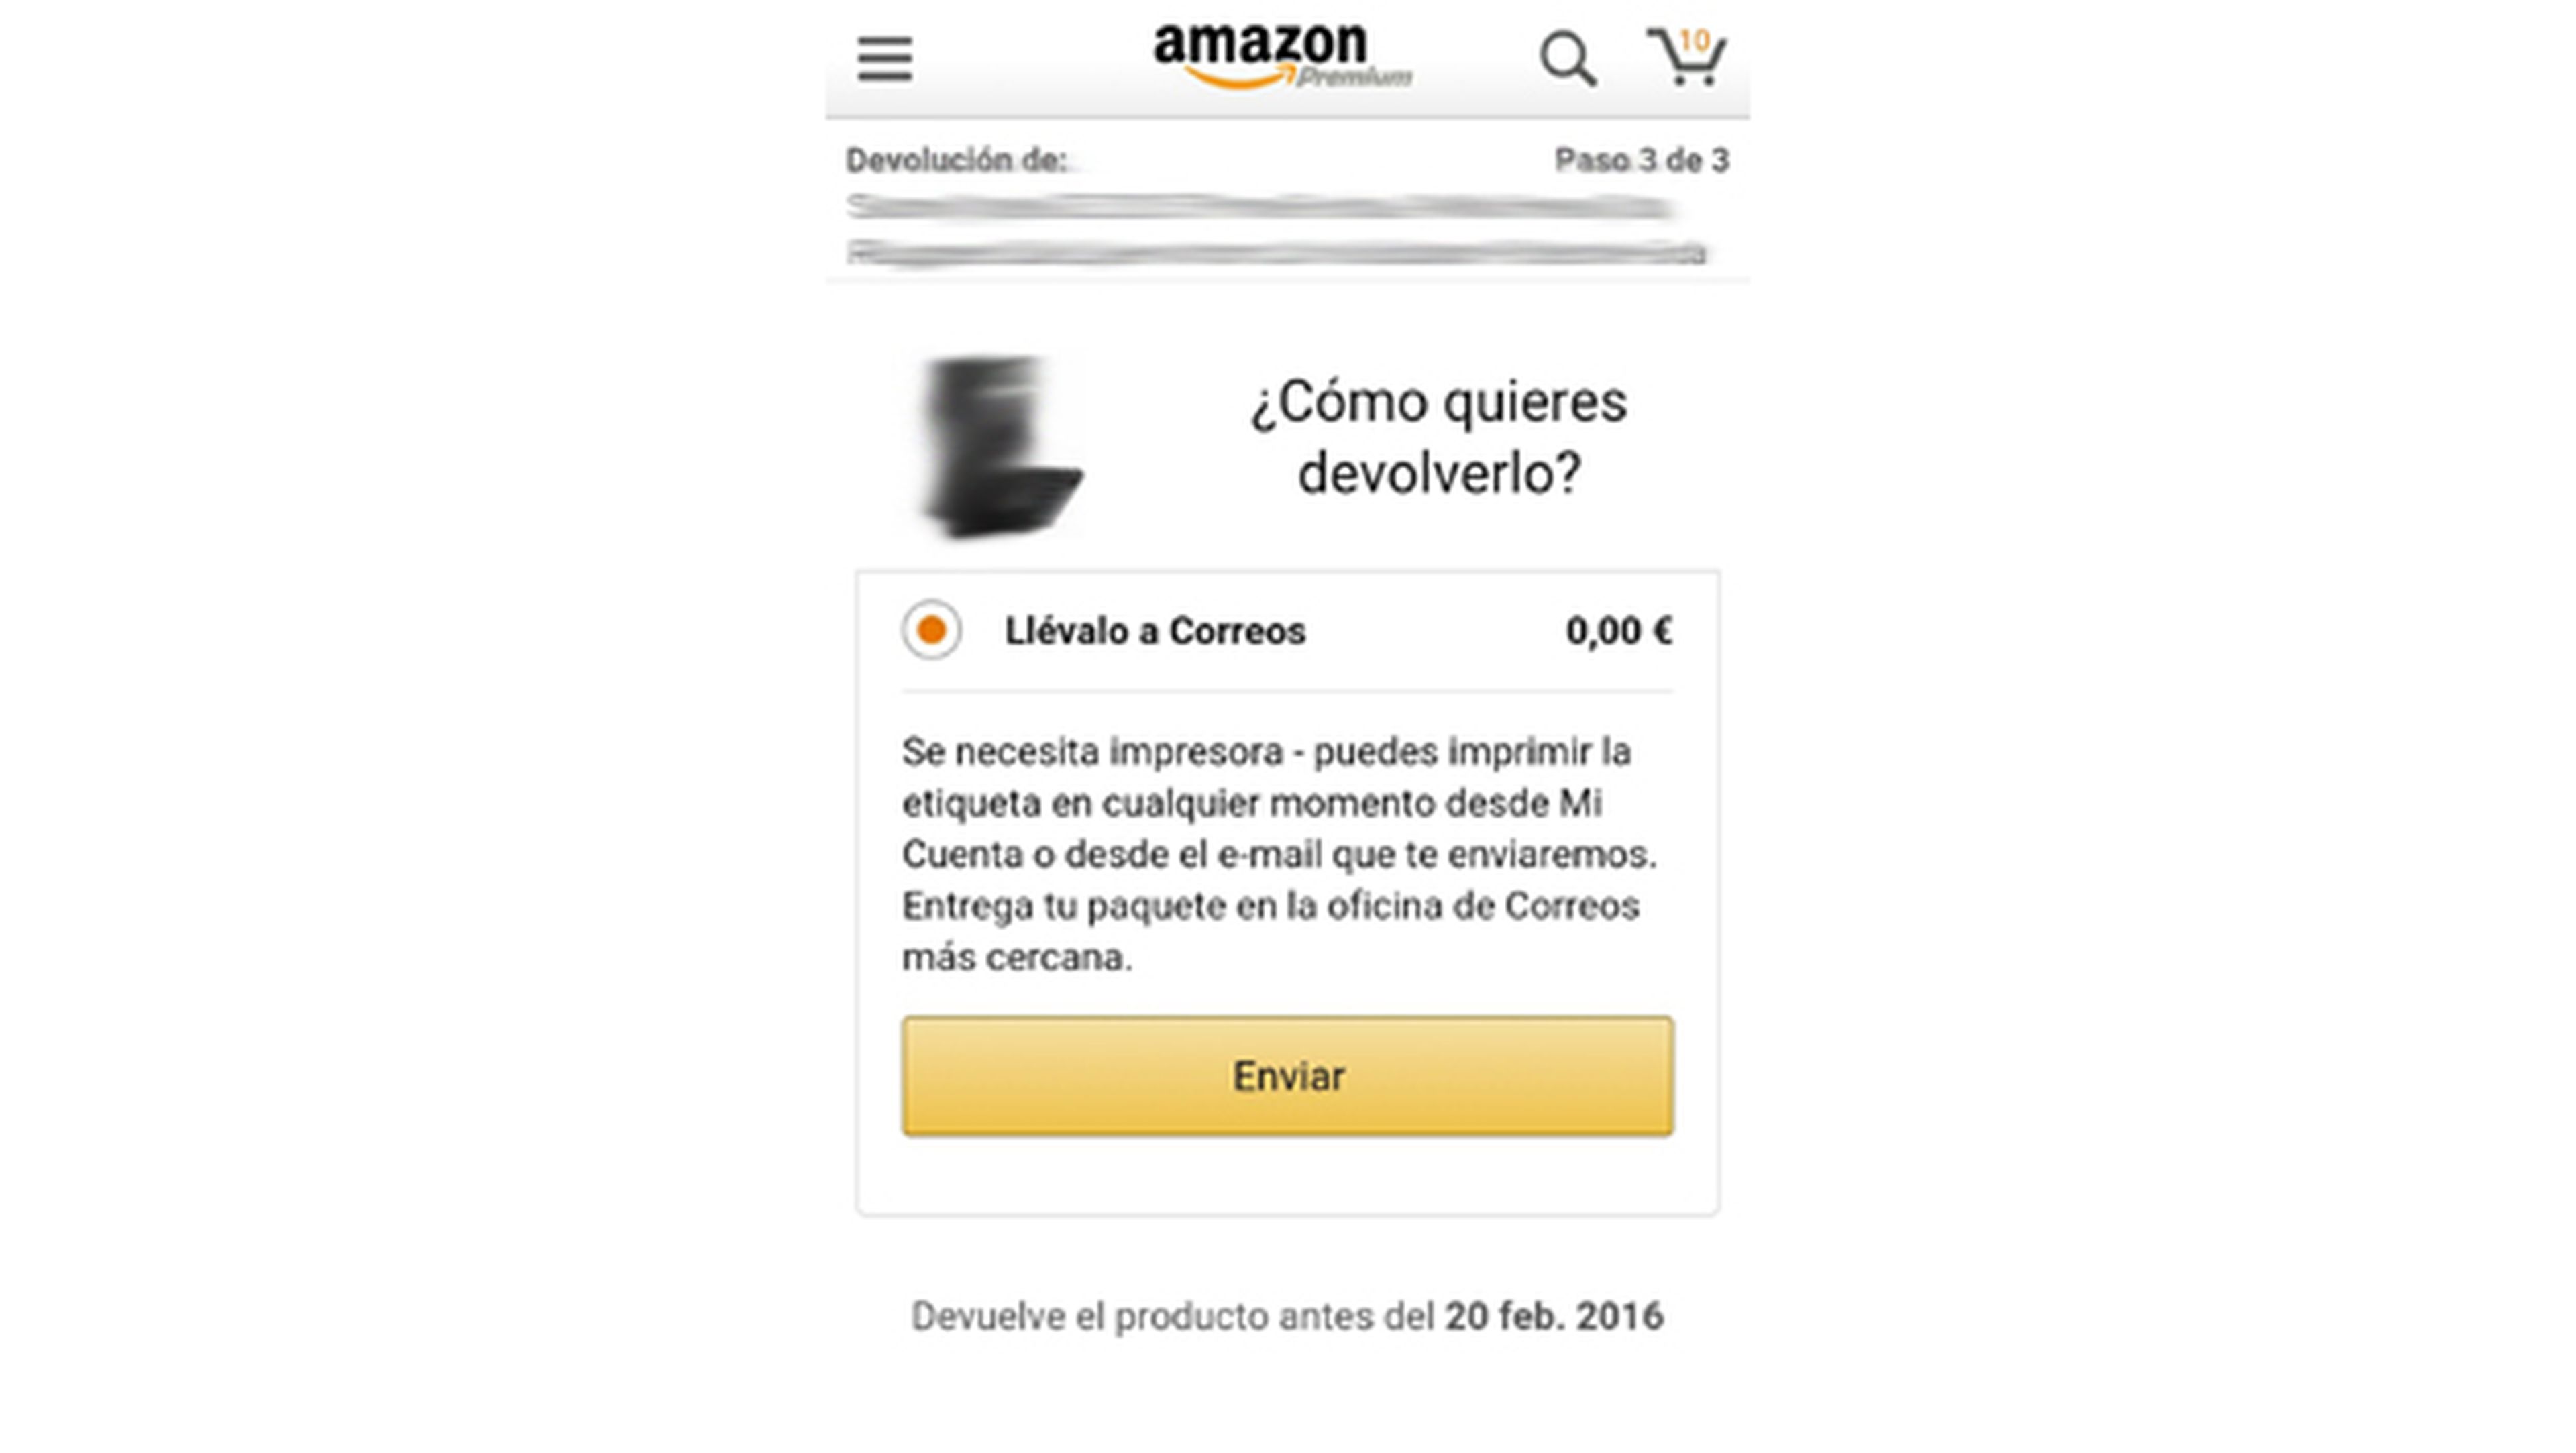 Hacer devoluciones en Amazon